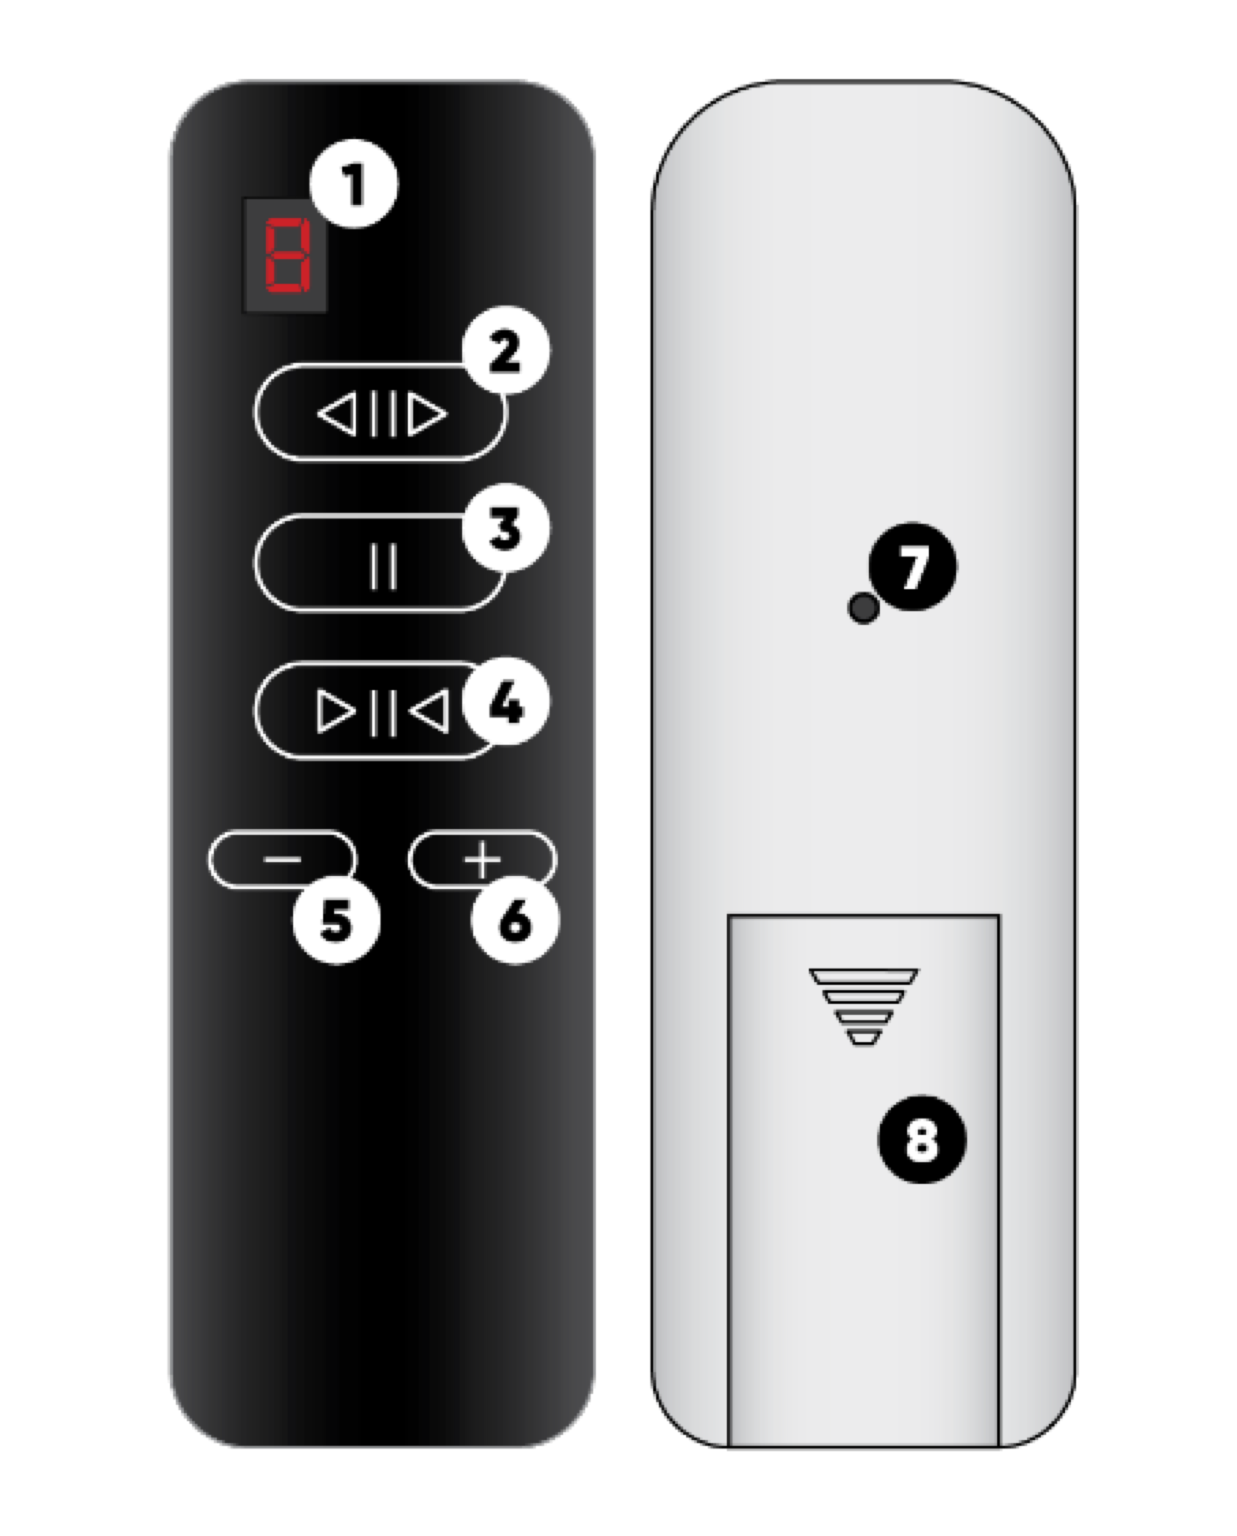 Présentation des boutons et afficheur de la télécommande de volets roulants Z-Wave Qubino ZMNKGD1 Shades Remote Controller